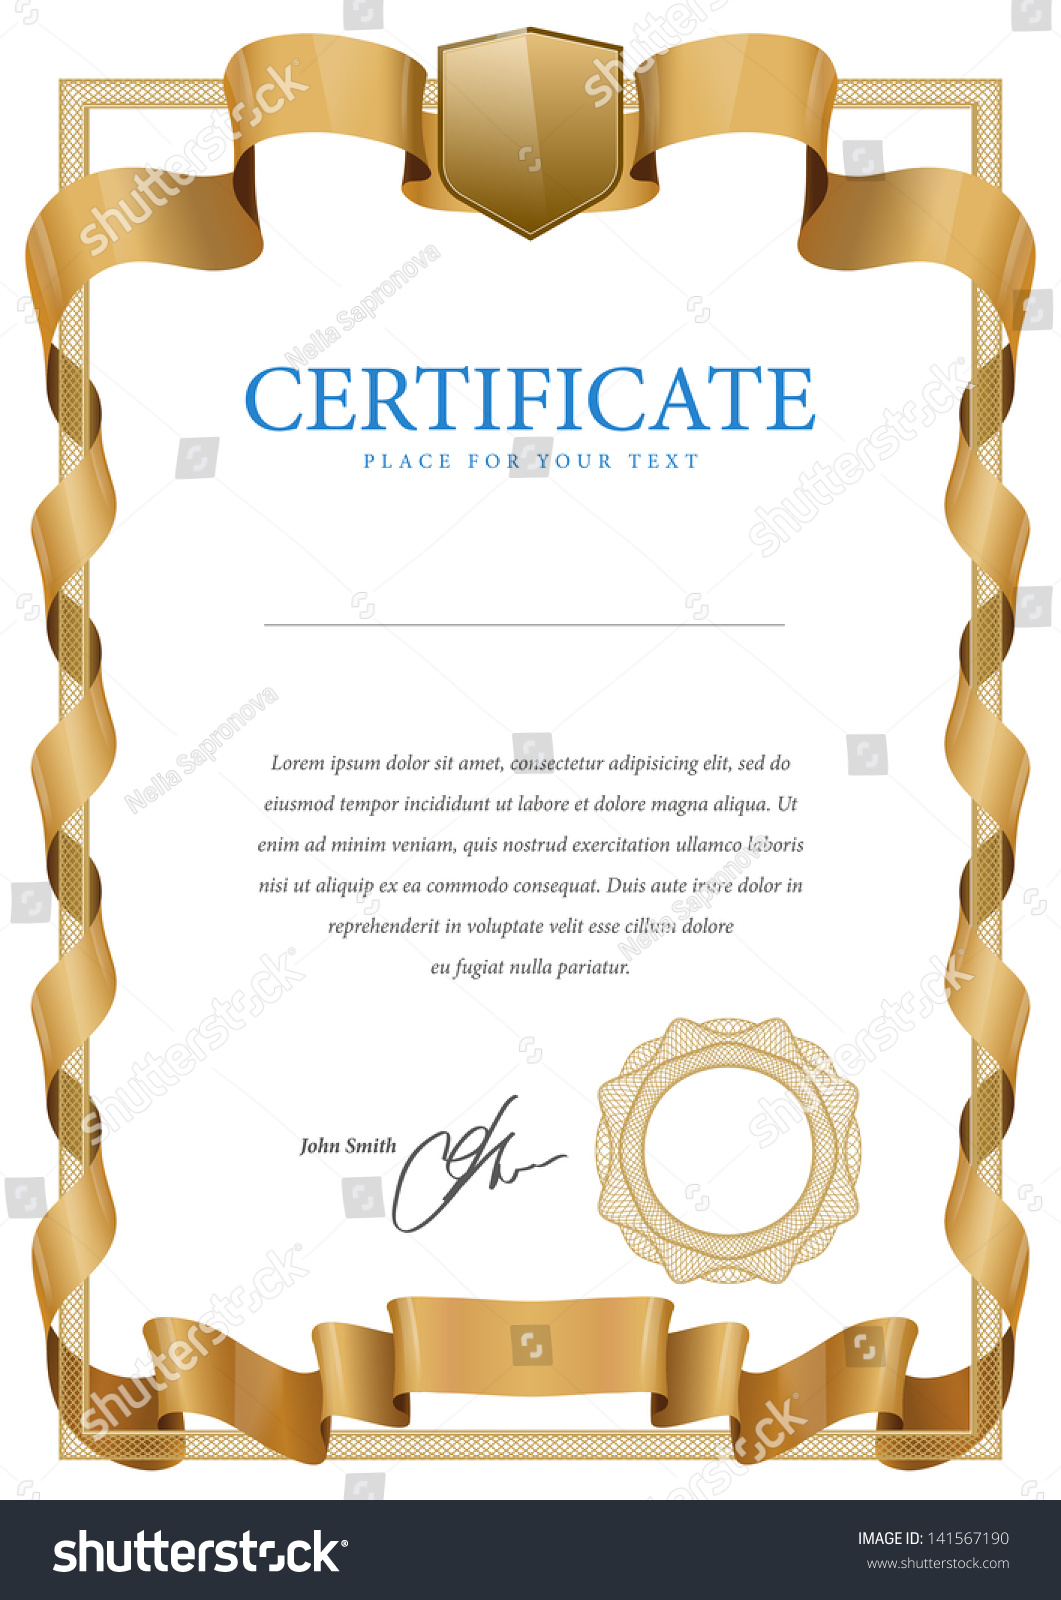 Diploma Certificate. Vector Frame - 141567190 : Shutterstock